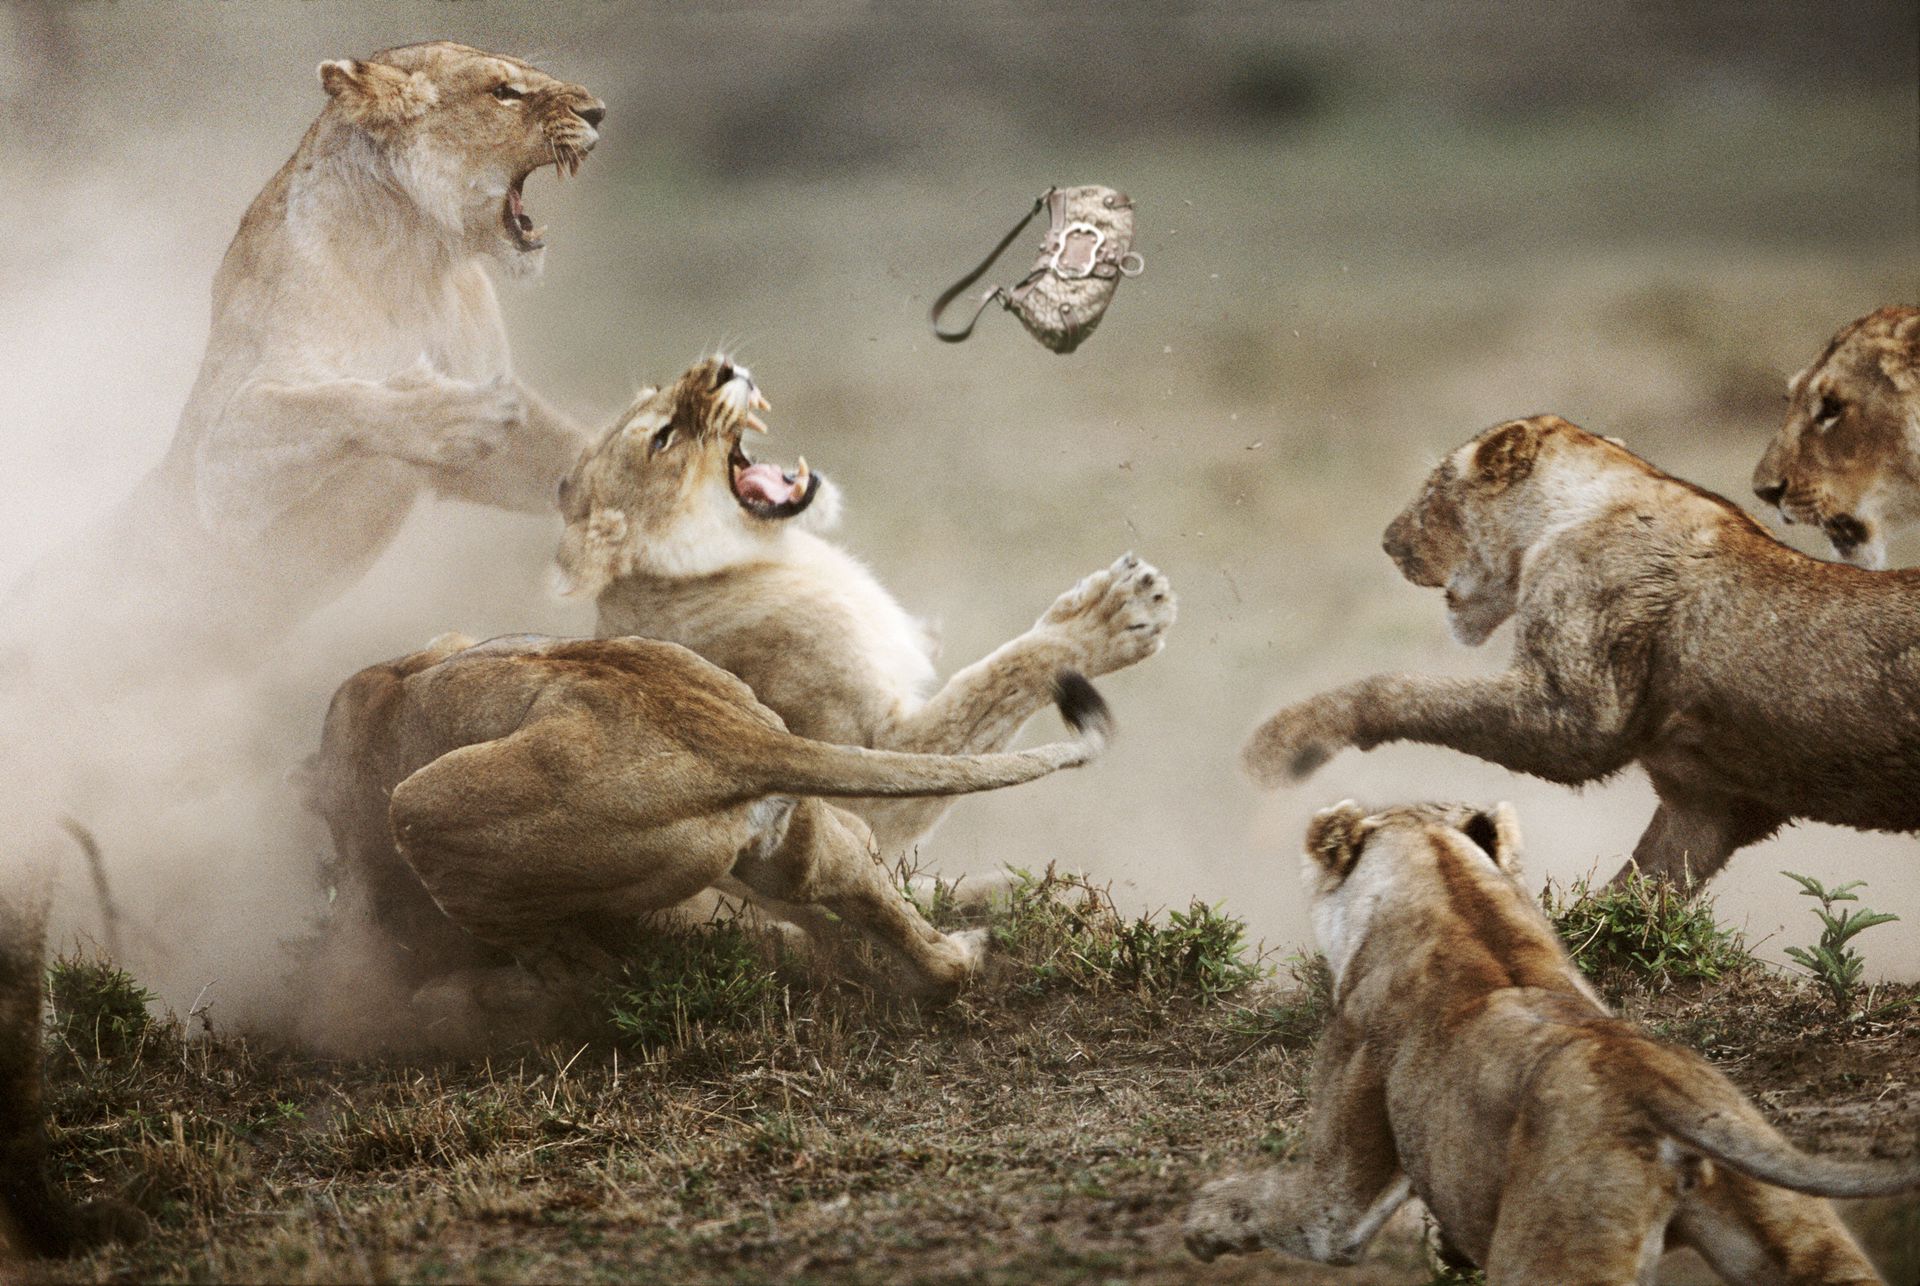 Бои хищников. Битва Львов за Прайд. Стив Блум фотограф. Животные дерутся. Агрессия животных.